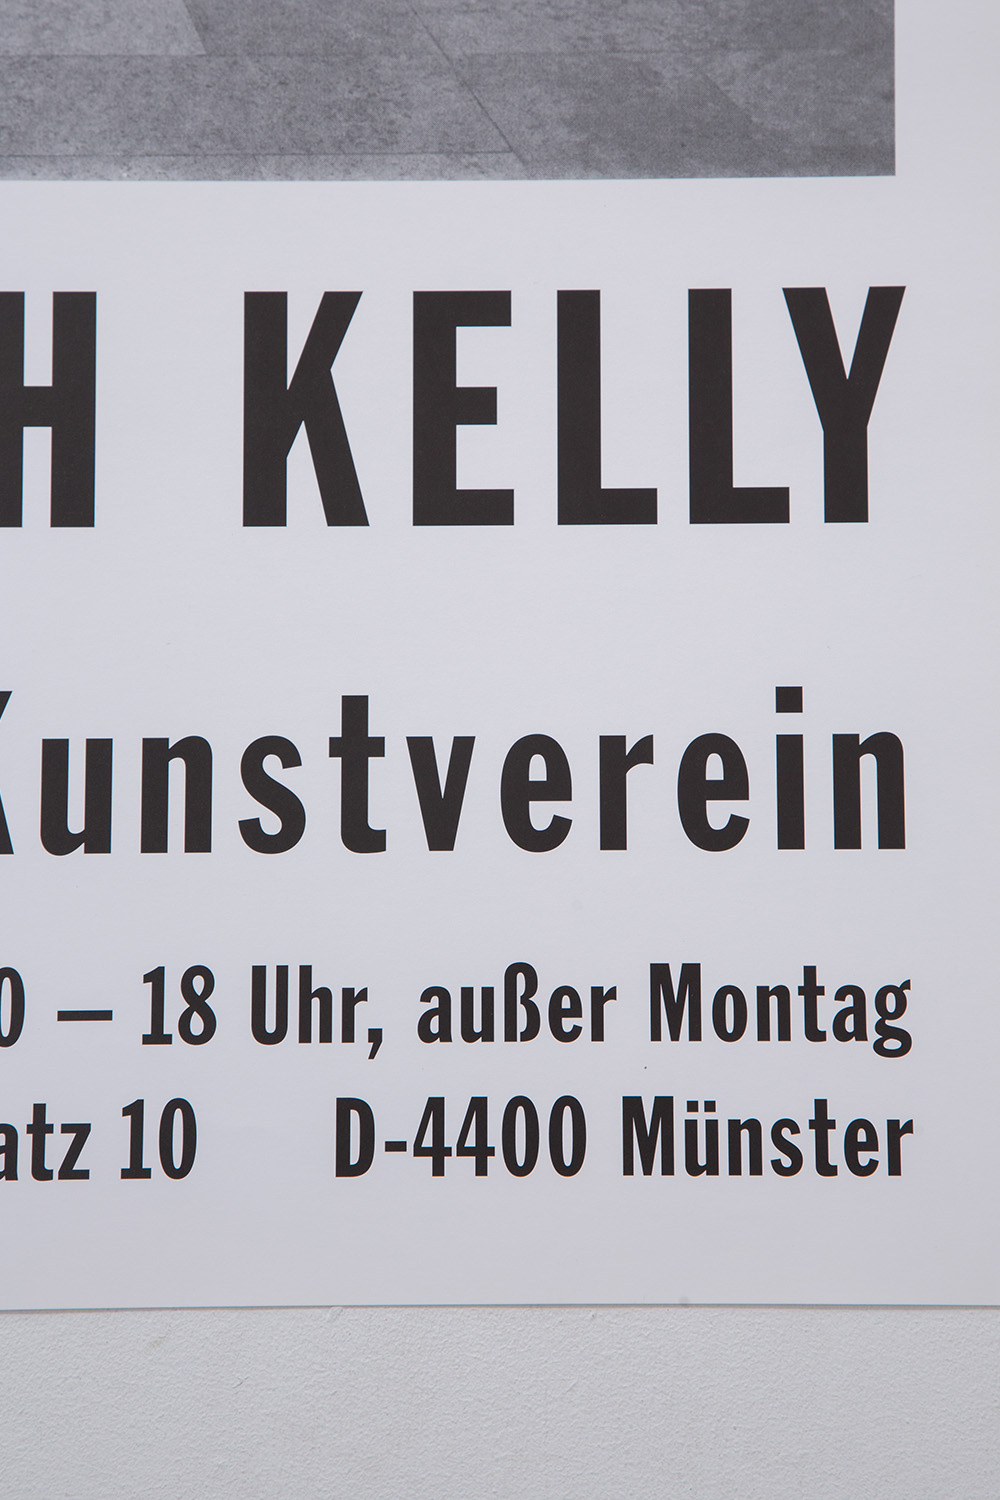 ‘Red Floor Panel’ by Ellsworth Kelly for Westfälischer Kunstverein , 1992